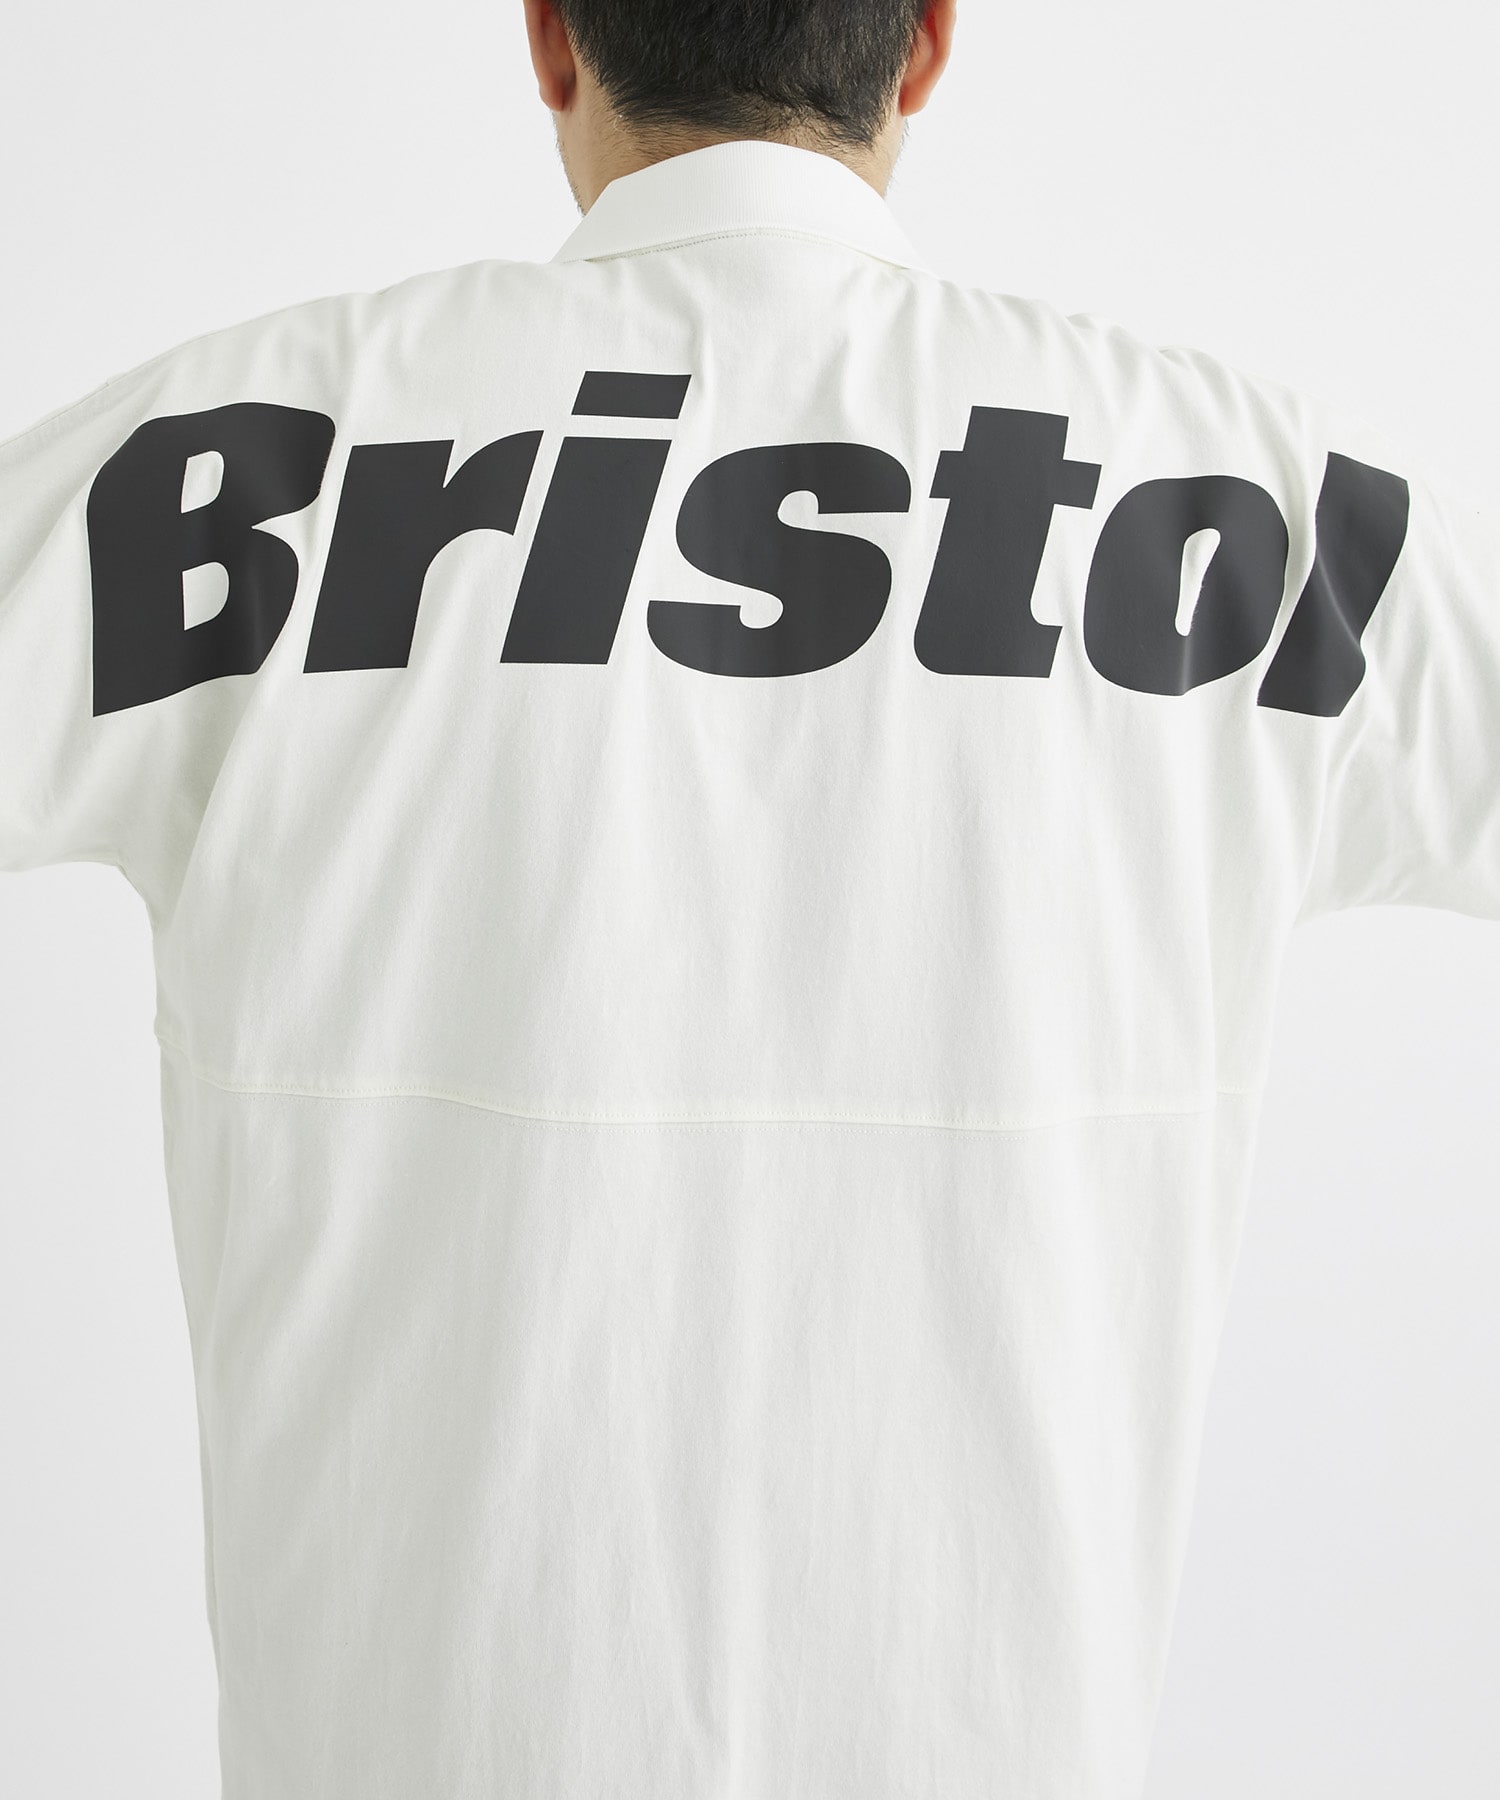 アウトレット商品 即落札OK Bristol BIG LOGO WIDE TEE WHITE | www